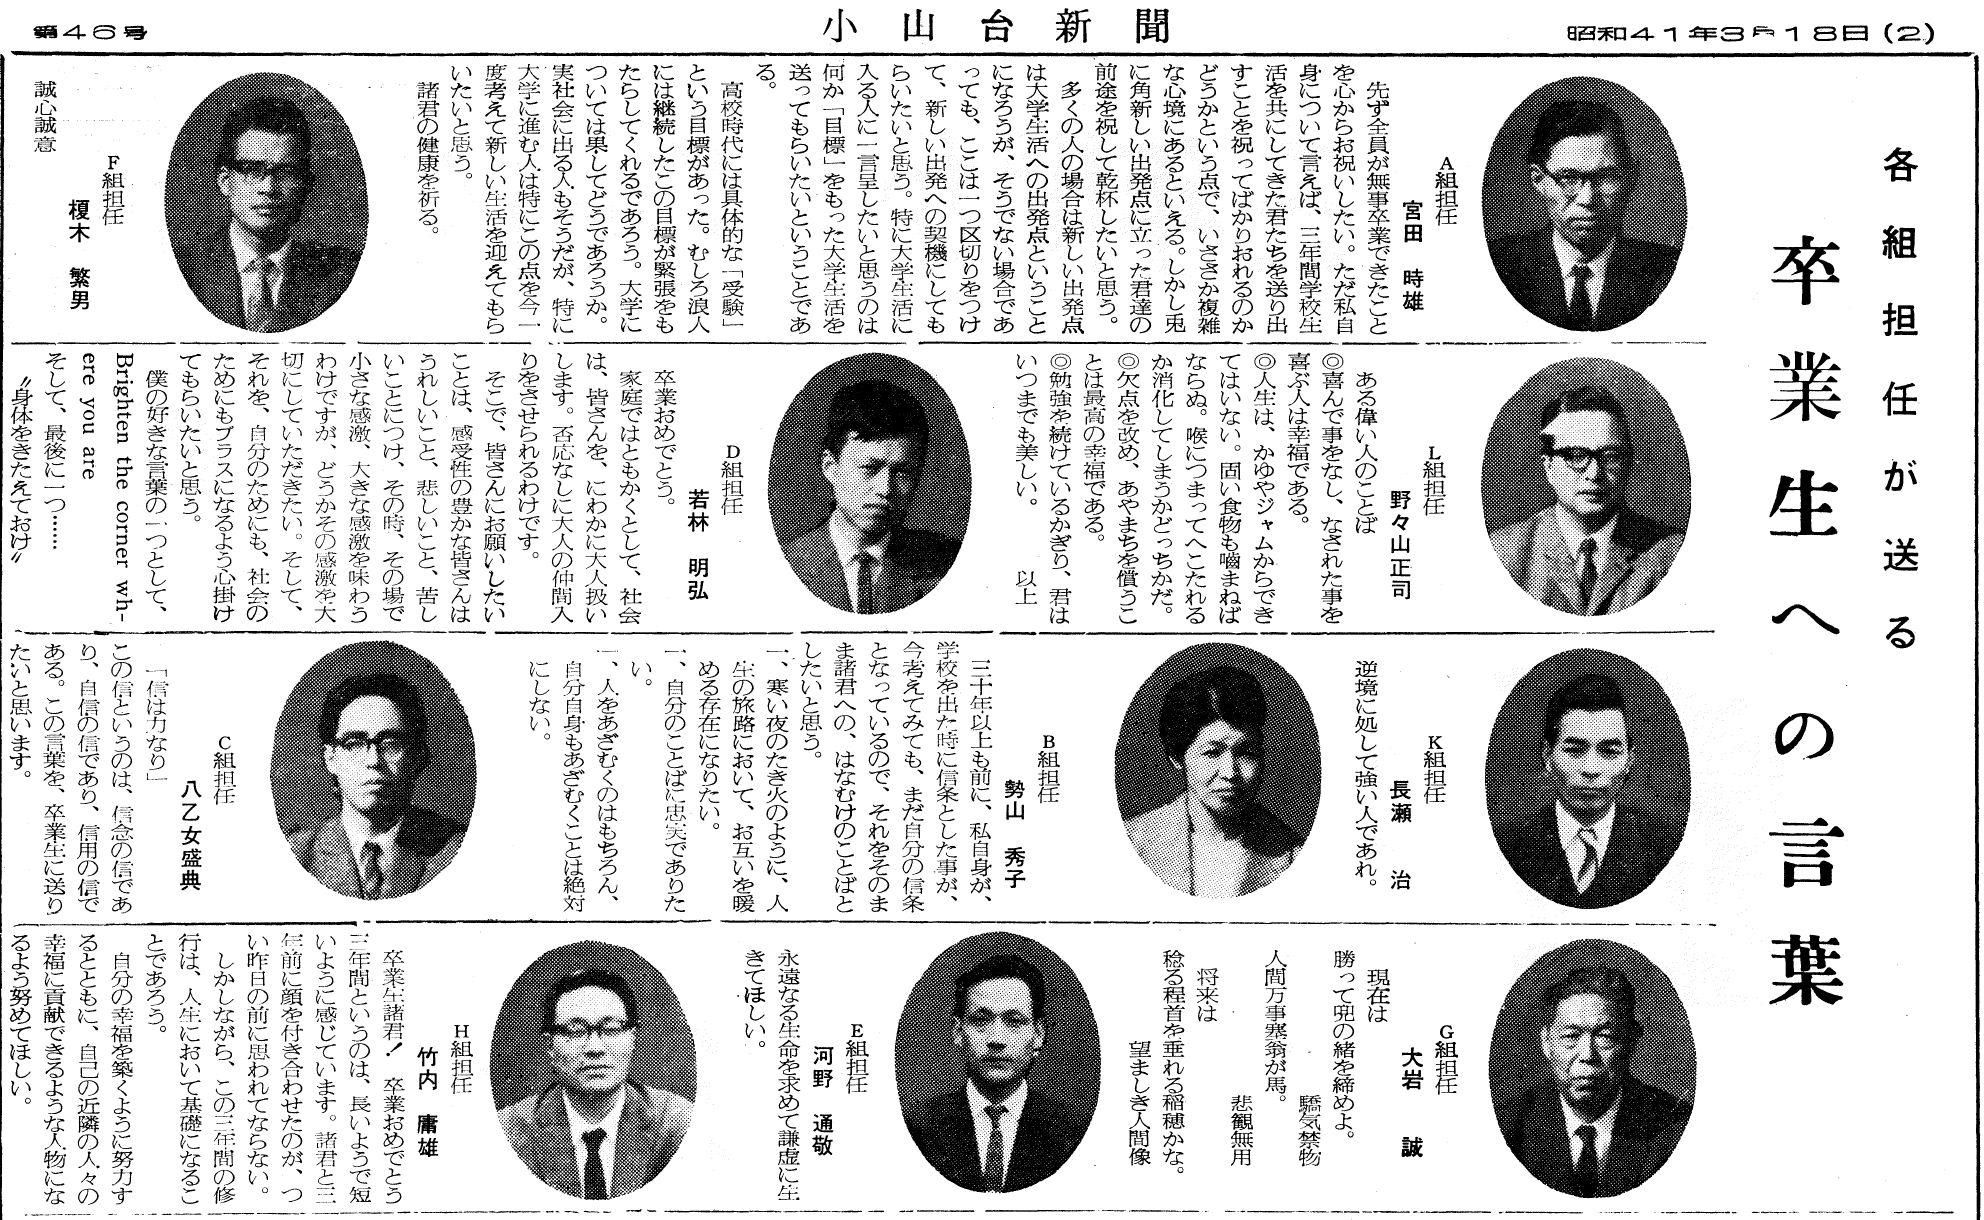 小山台新聞46号より「卒業生への言葉」